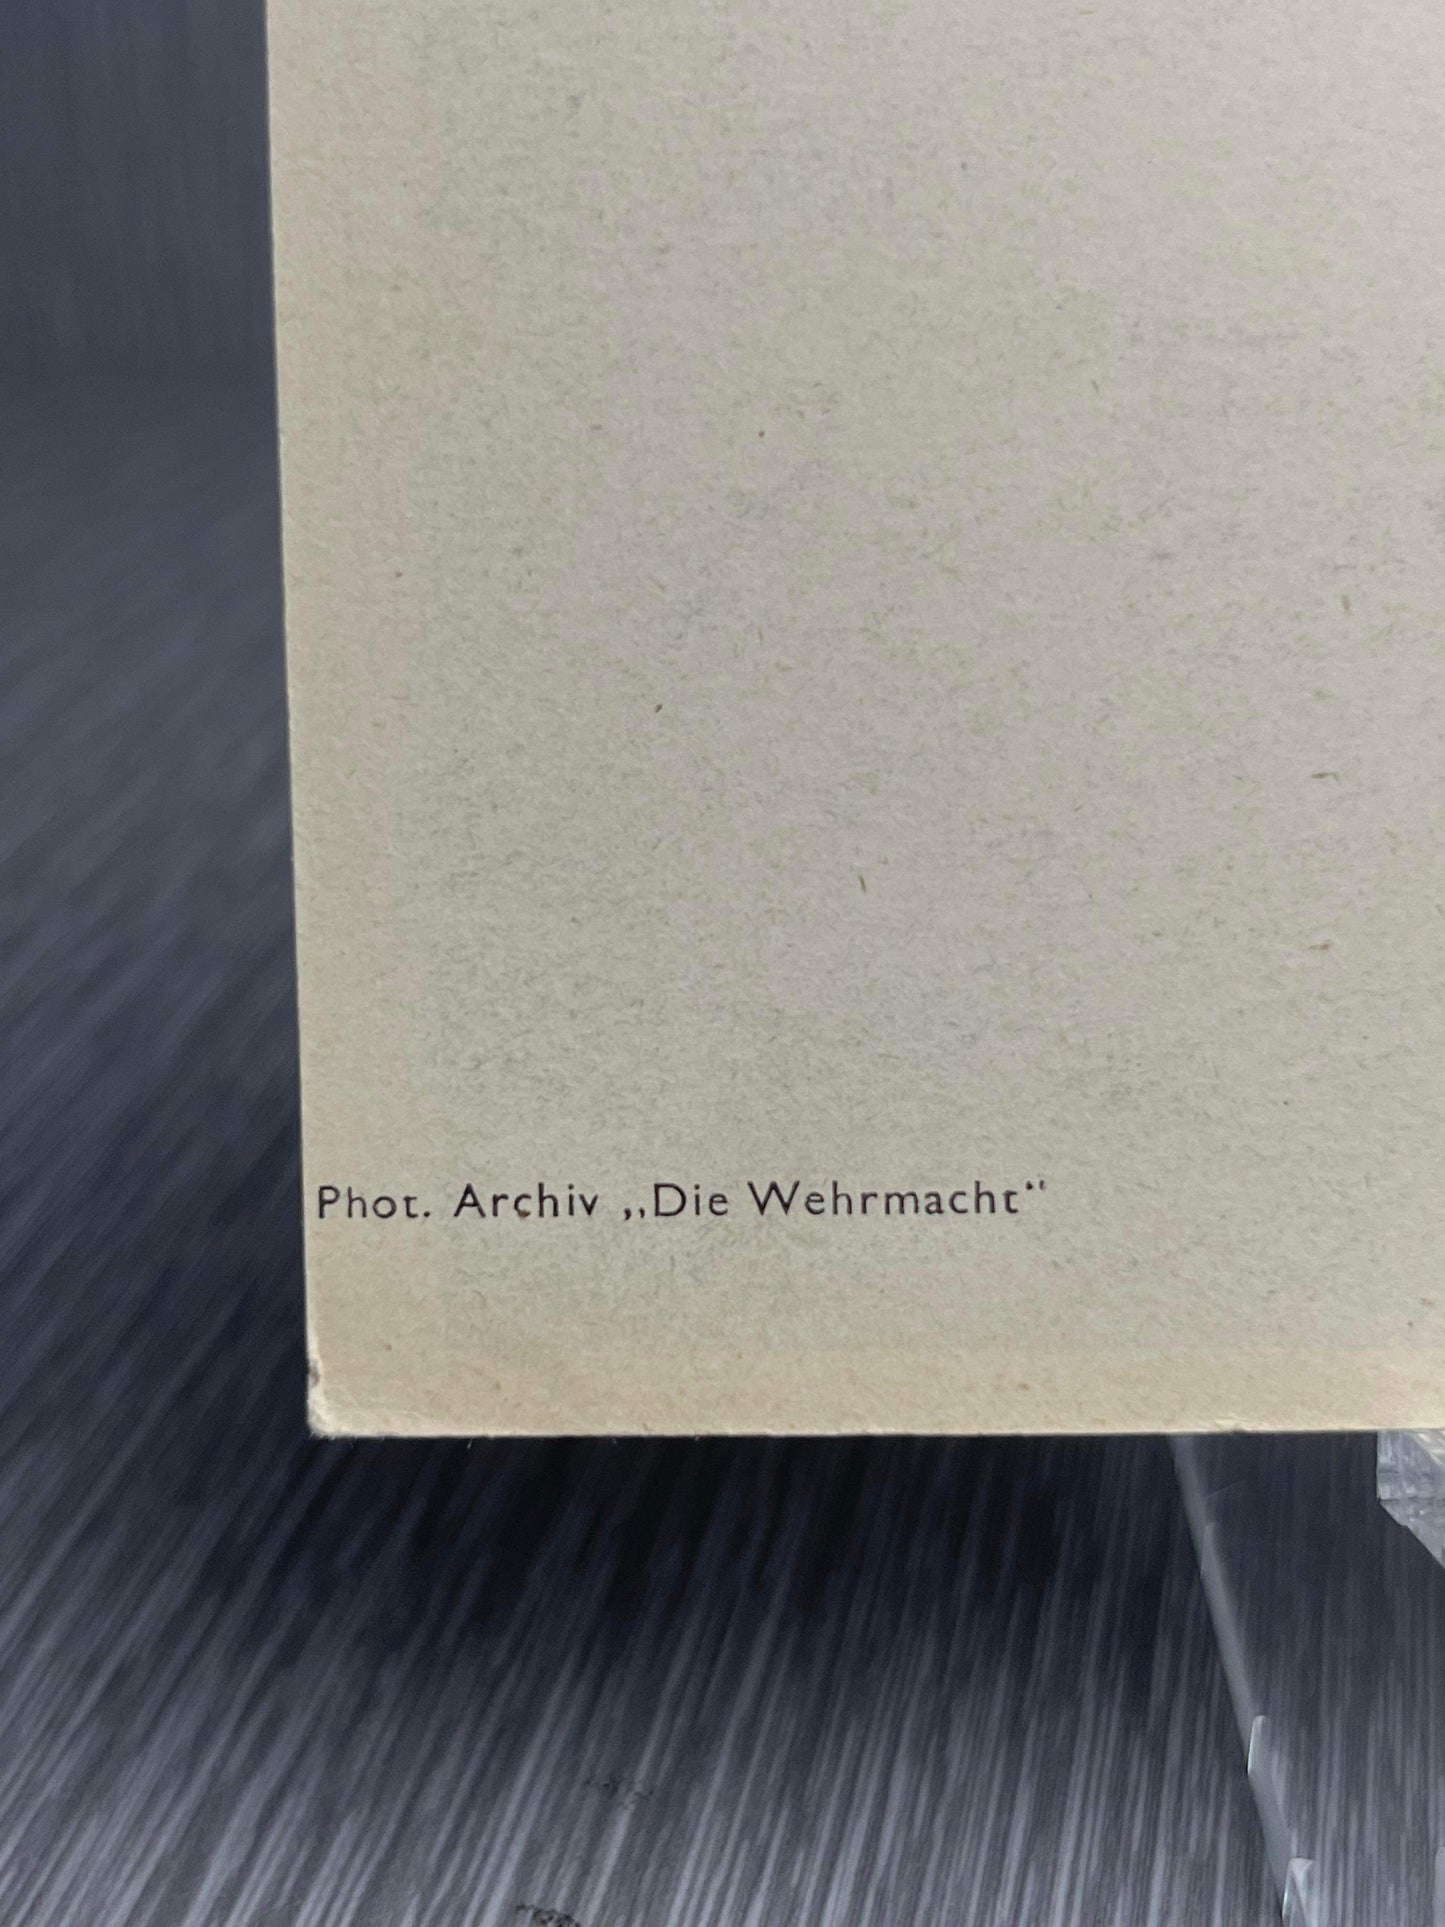 GERMAN WW2 KRIEGSMARINE "REIN-SCHIFF" POSTCARD "THE WEHRMACHT ARCHIVES"